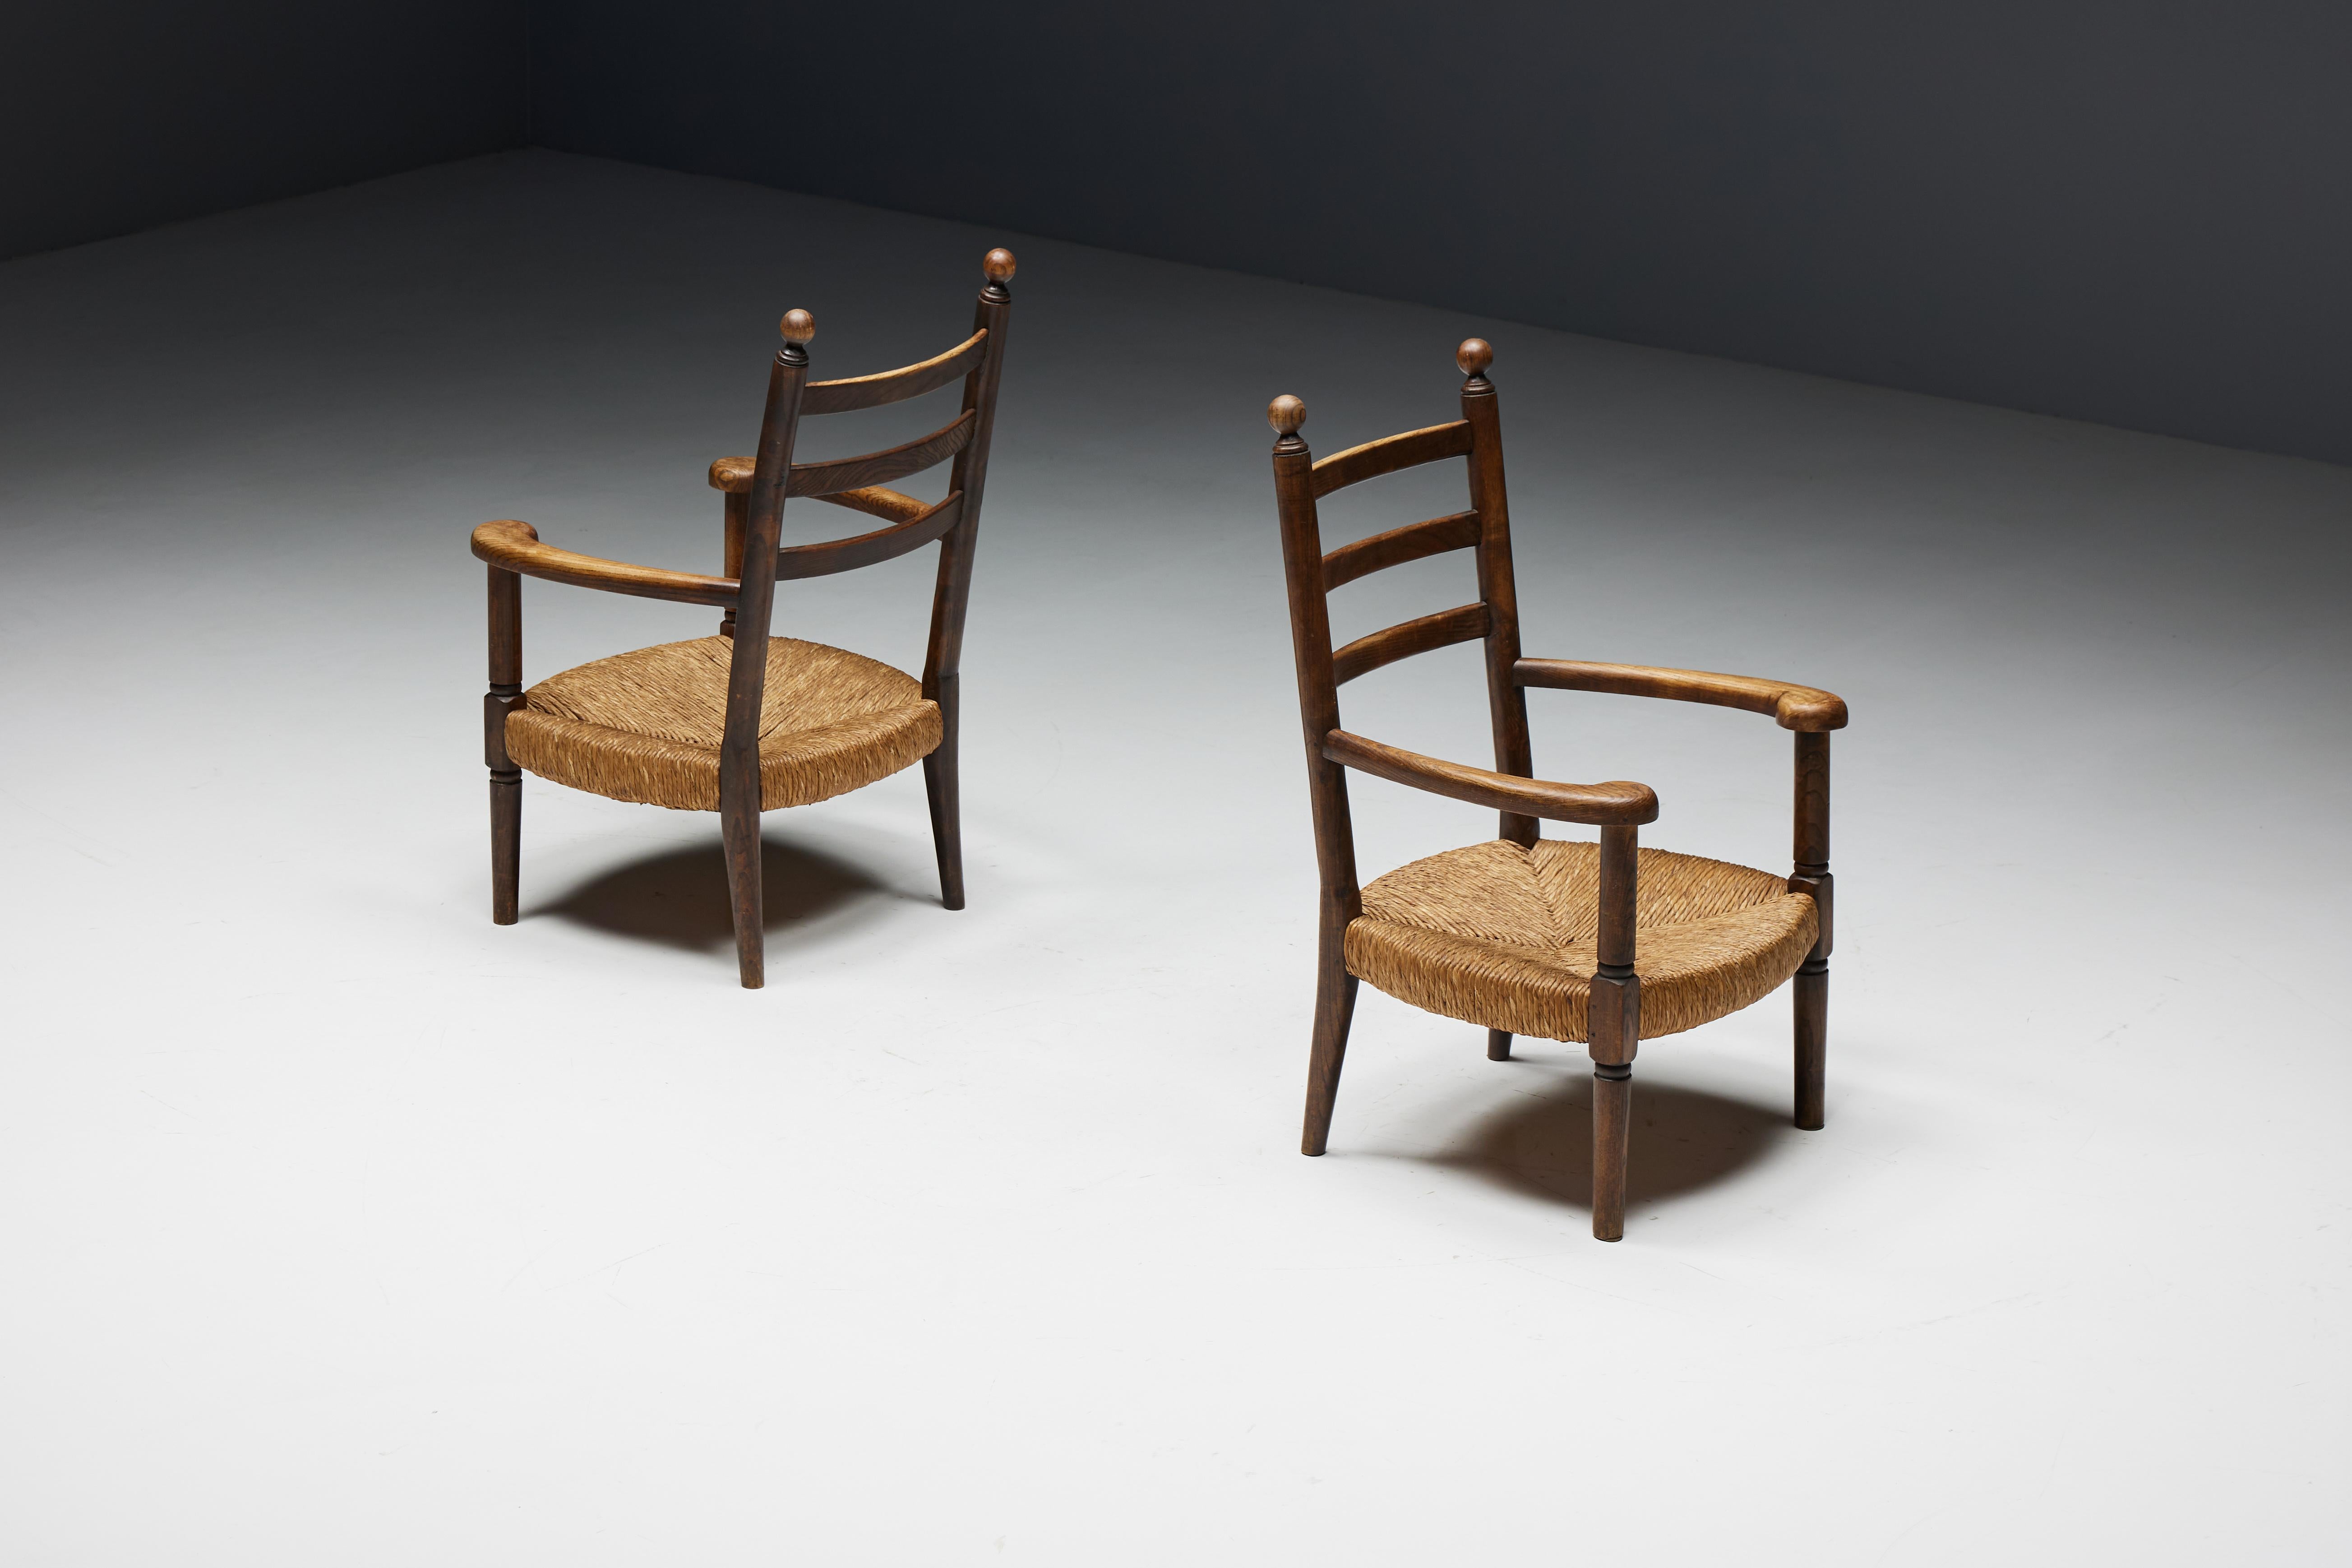 Rustikale Sessel aus den frühen 1900er Jahren zeigen die außergewöhnliche Handwerkskunst französischer Kunsthandwerker im Geiste der Arts-and-Crafts-Bewegung. Die aus robustem Holz gefertigten Sessel mit ihren aus Binsenstroh geflochtenen Sitzen